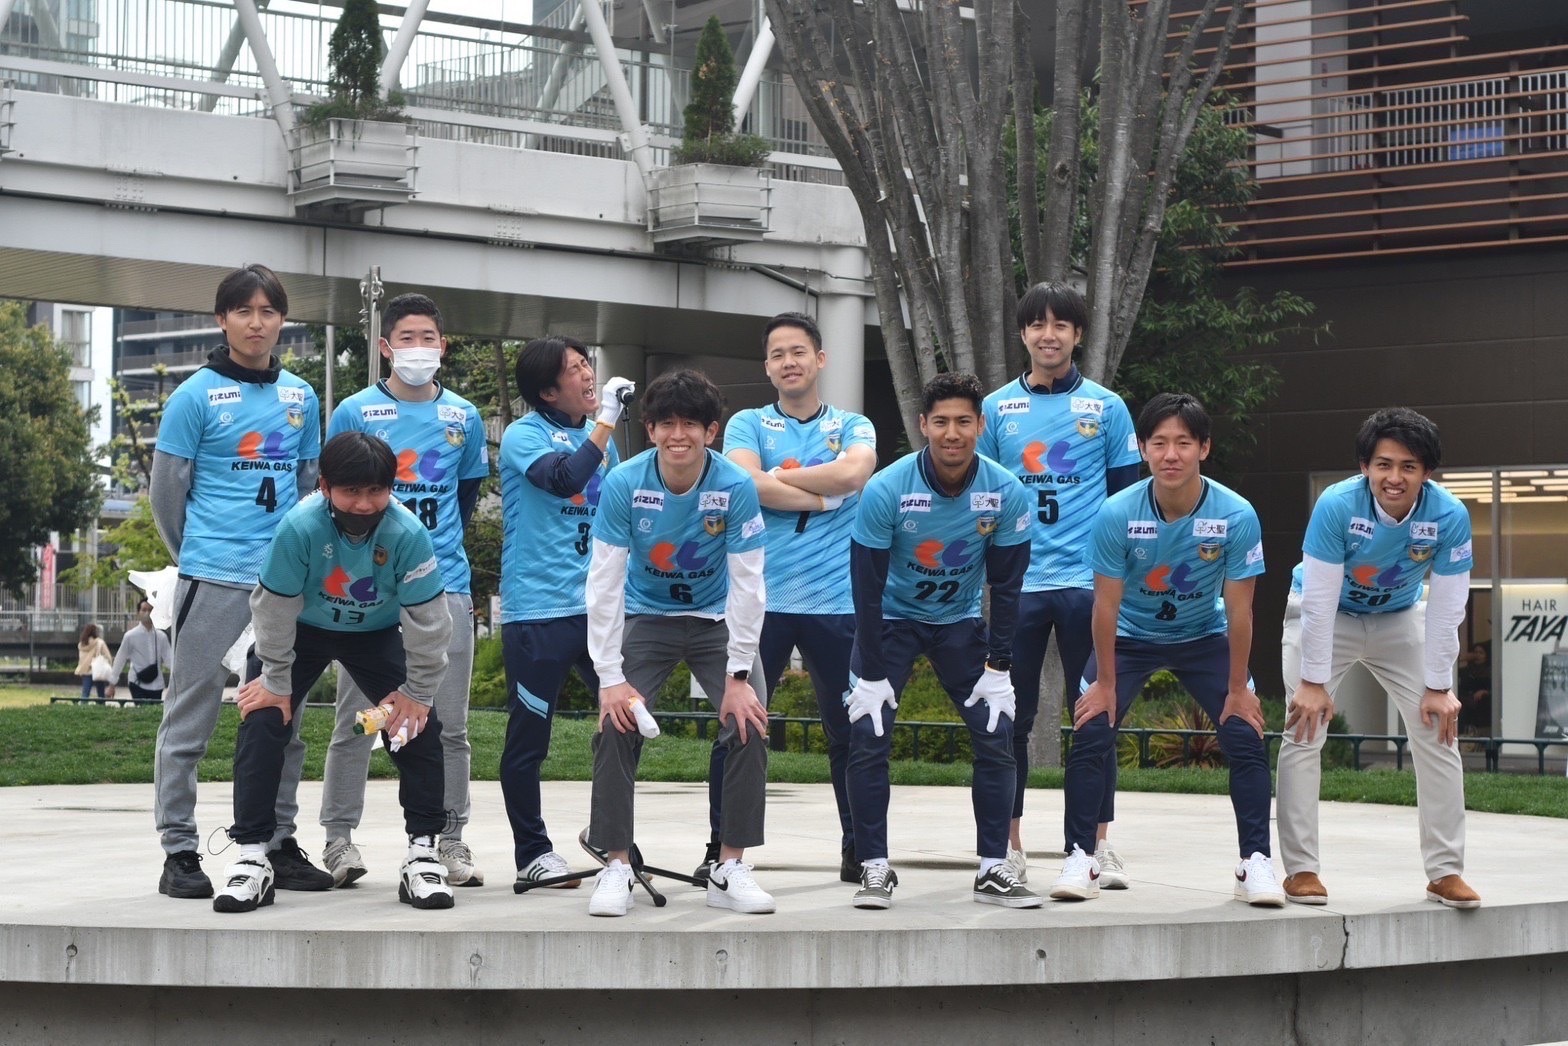 清掃活動に参加しているNAGAREYAMA F.Cの選手の方々。